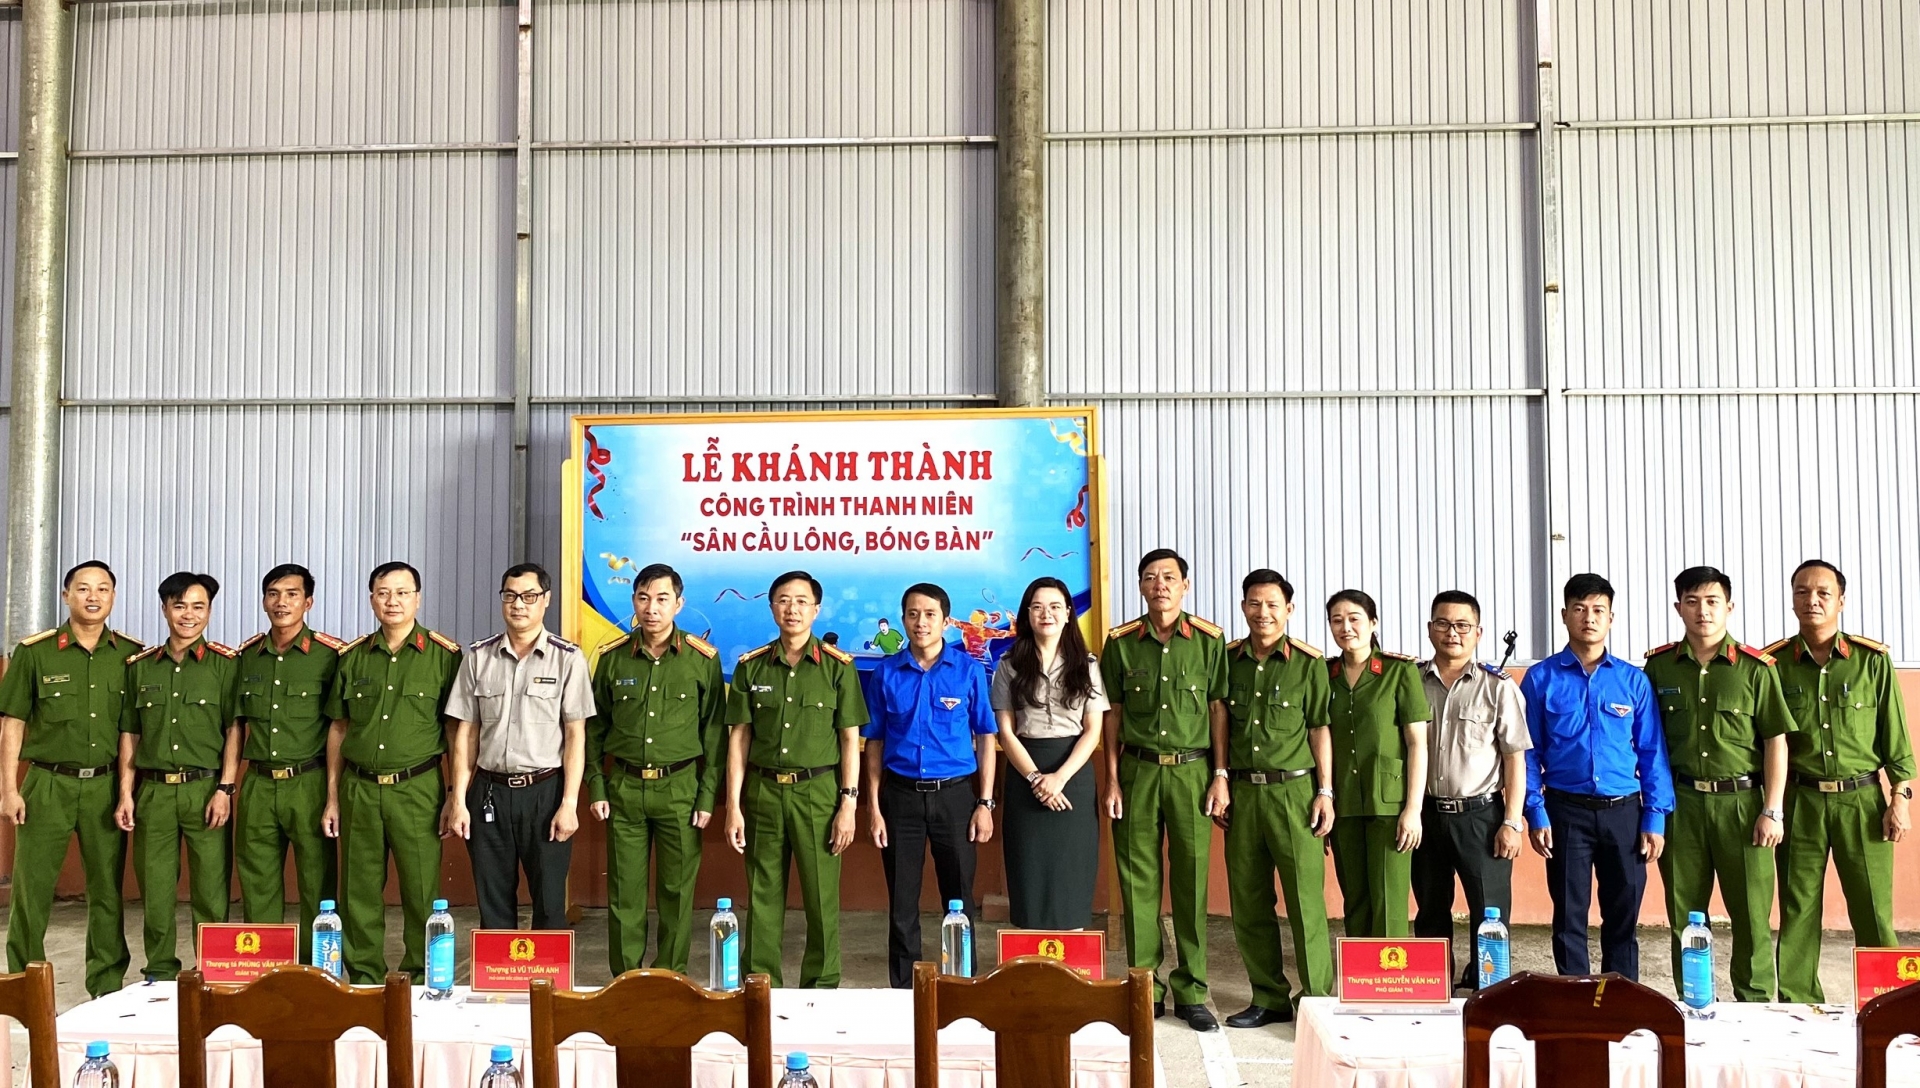 Đại diện Tỉnh Đoàn Lâm Đồng và Đoàn Thanh niên Trại giam Đại Bình tổ chức khánh thành, đưa vào sử dụng Công trình Thanh niên